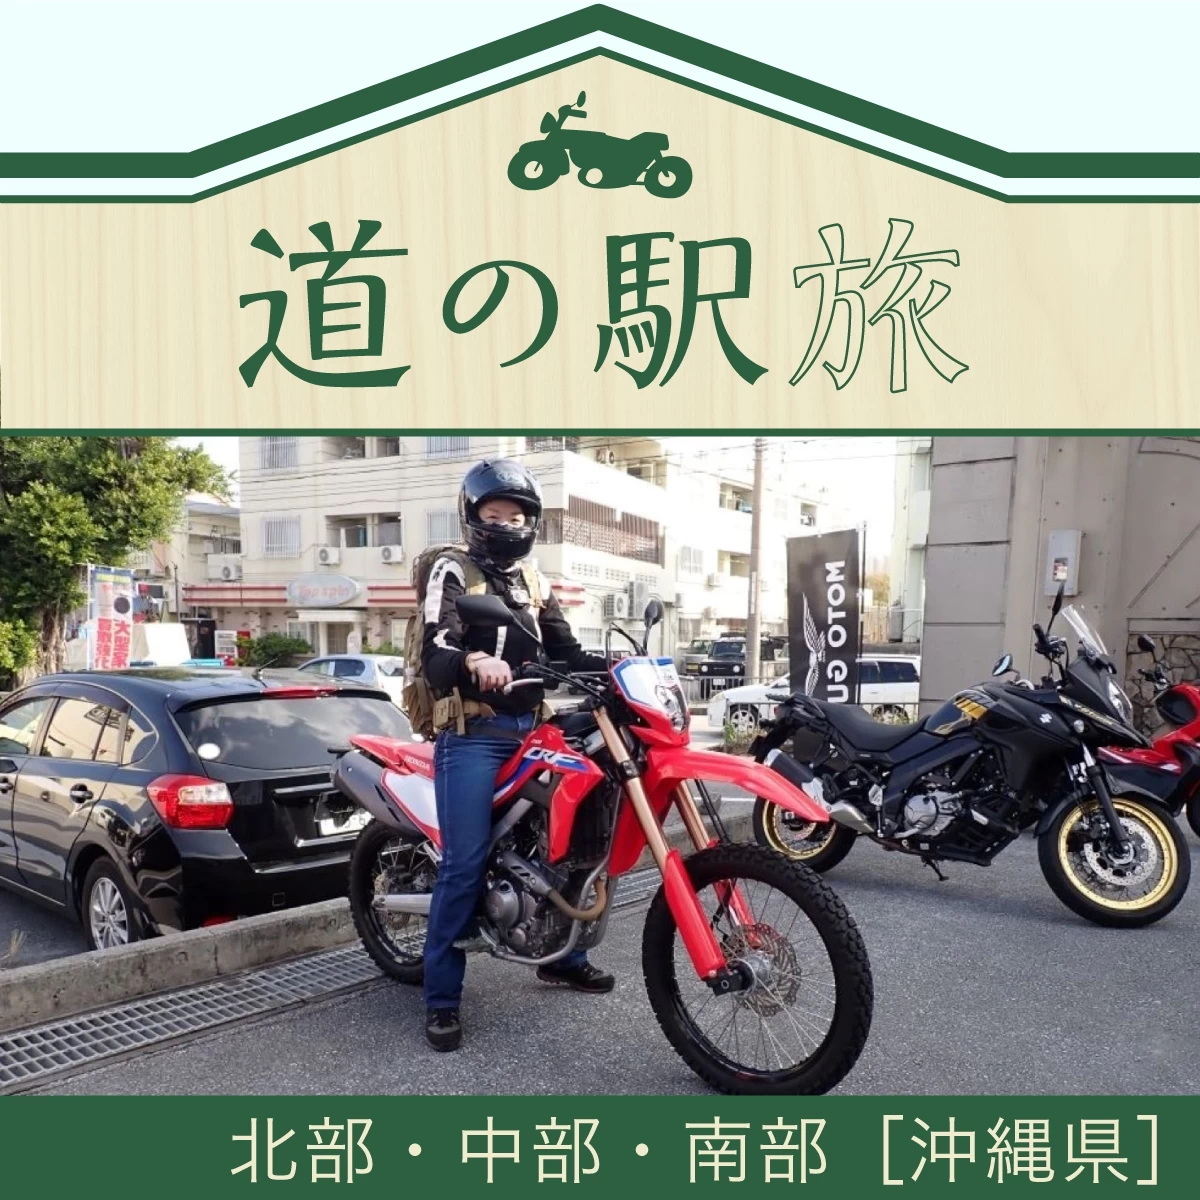 沖縄本島を1周する2泊3日旅行。レンタルバイクで道の駅を巡る